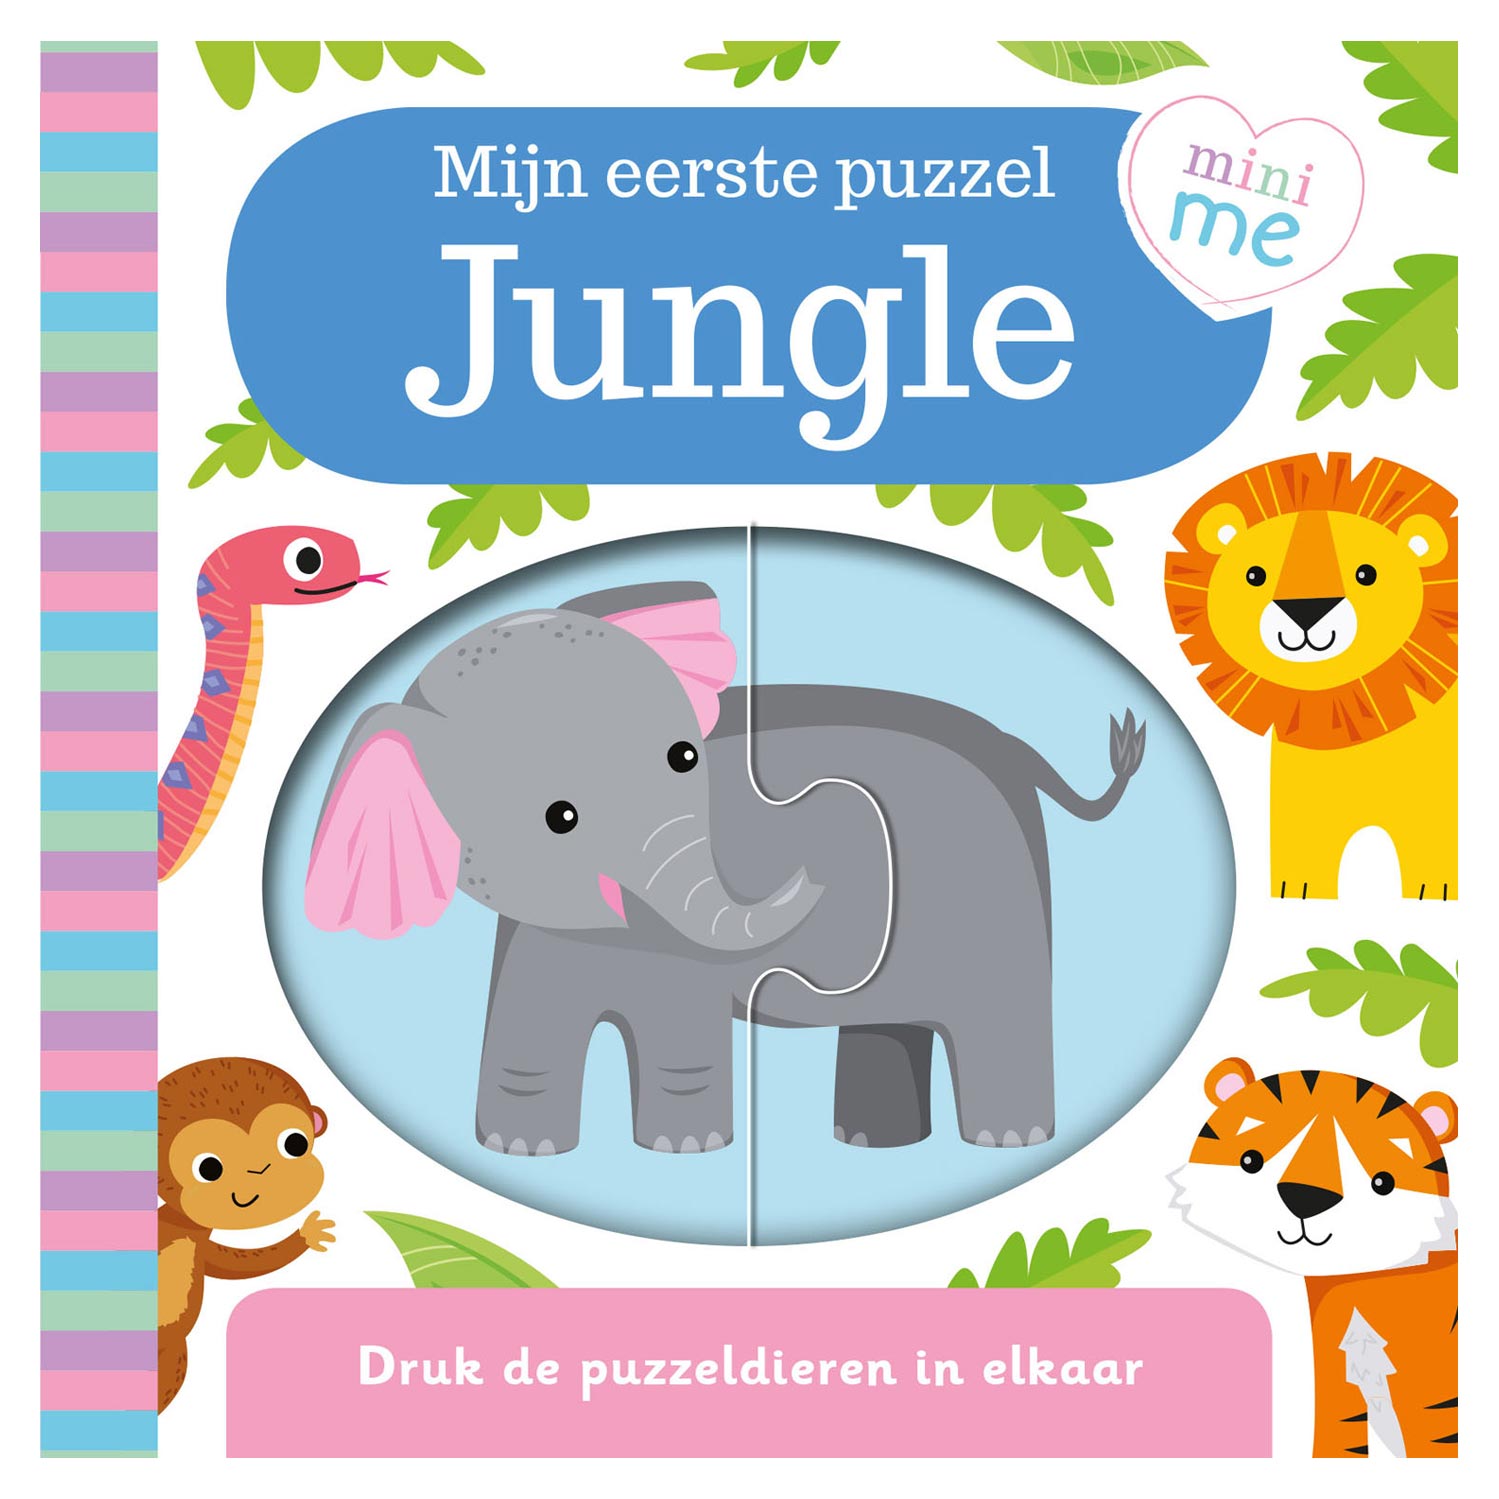 Mijn Eerste Puzzel Mini Me - Jungle